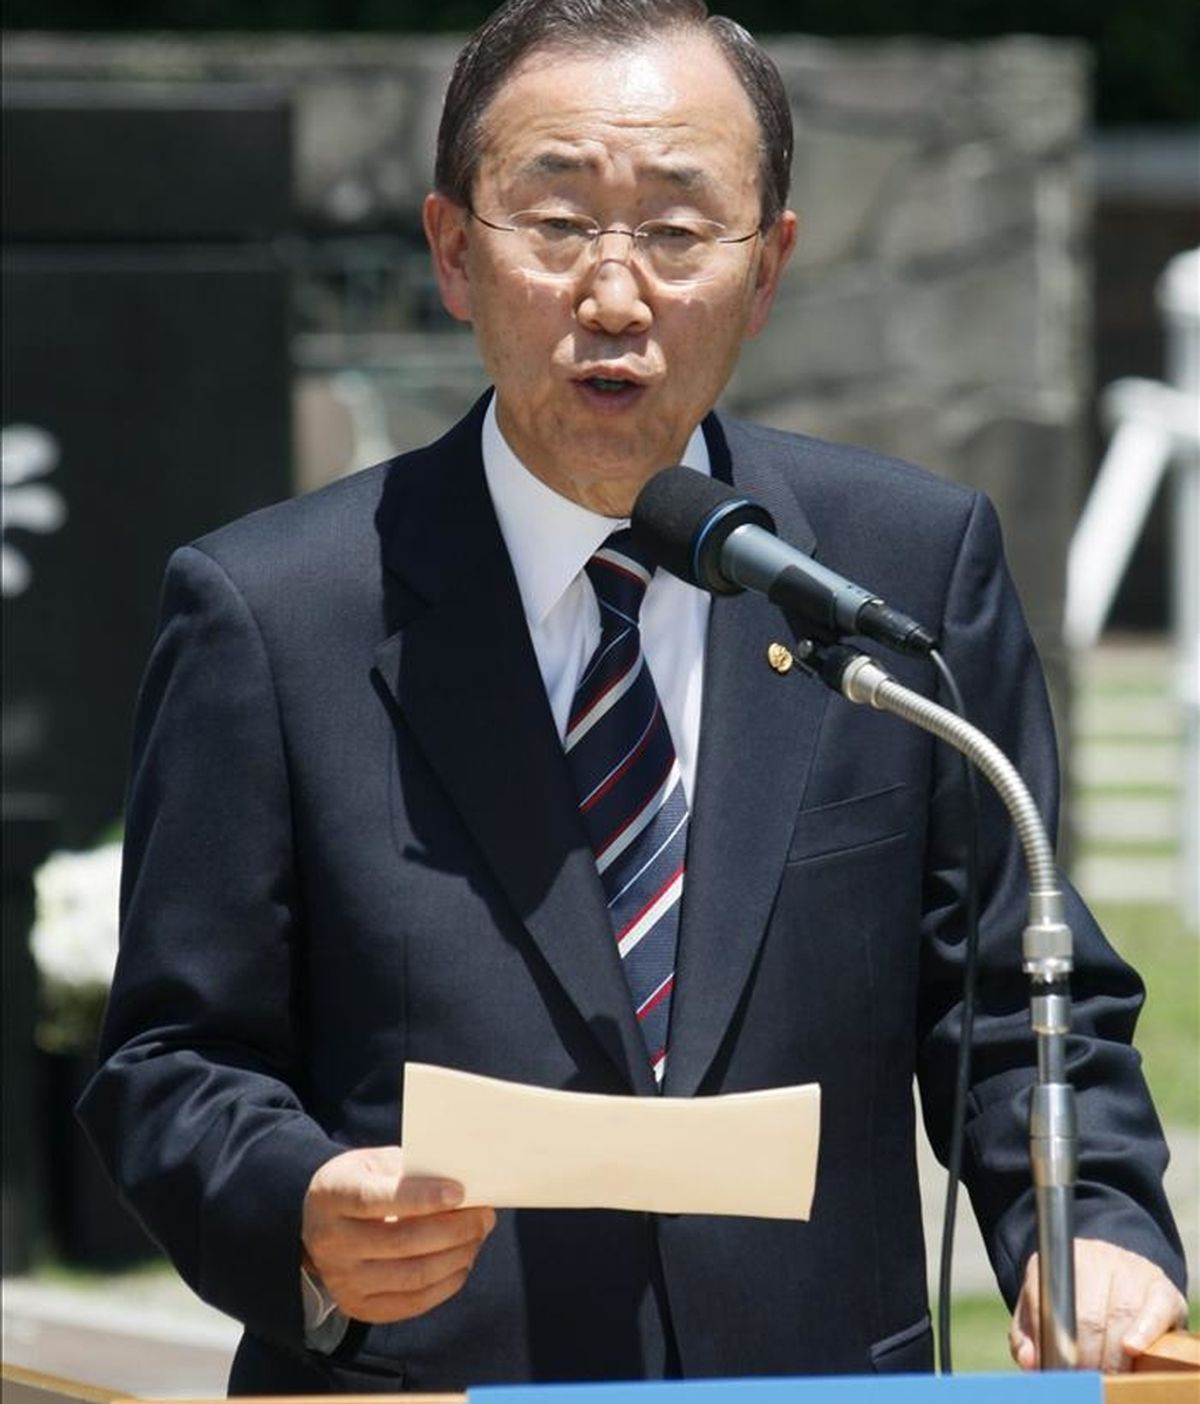 El portavoz de la ONU, Martin Nesirky, detalló, que el secretario general de la organización, Ban Ki-Moon está preocupado ante las informaciones sobre "víctimas civiles a causa de las operaciones israelíes en Gaza". EFE/Archivo